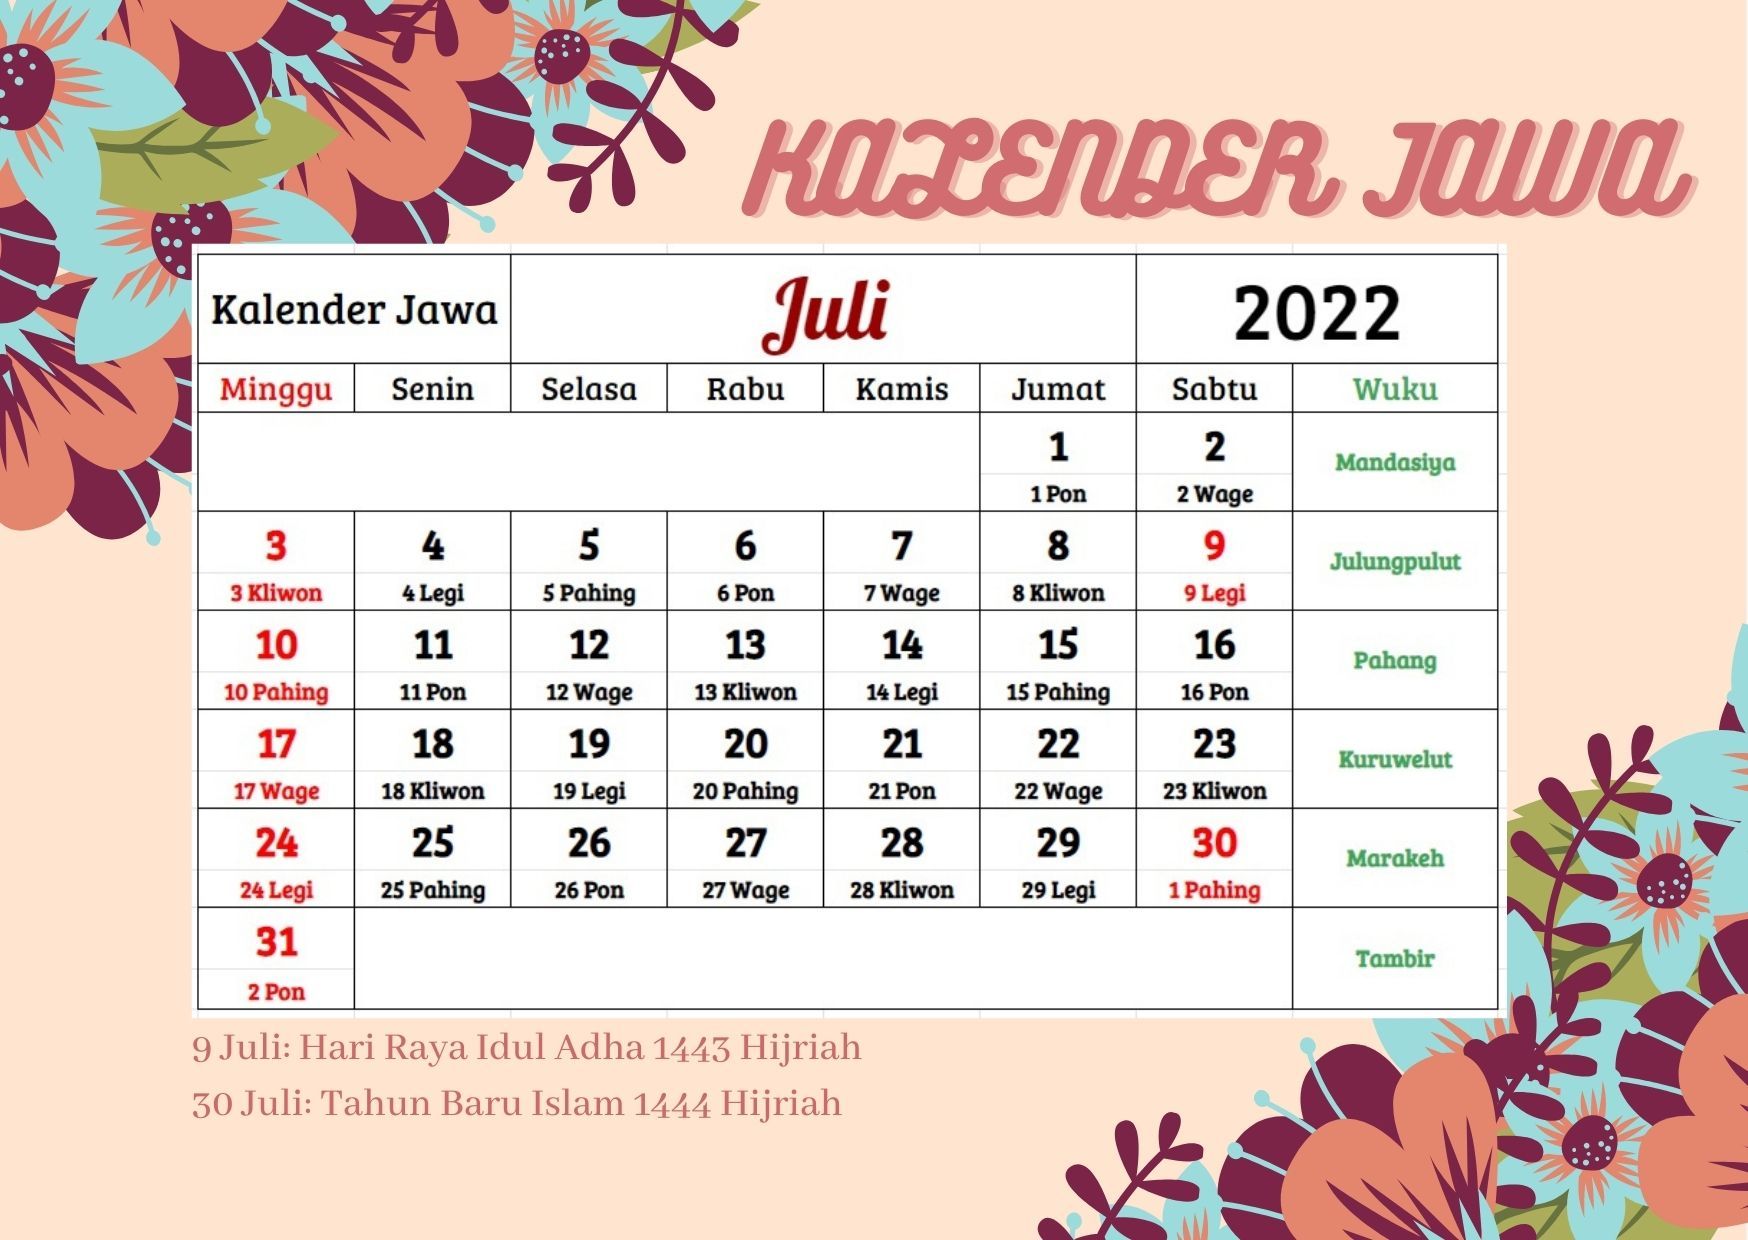 Kalender Jawa 2022 Lengkap, Bantu Cari Hari Baik Berdasarkan Weton